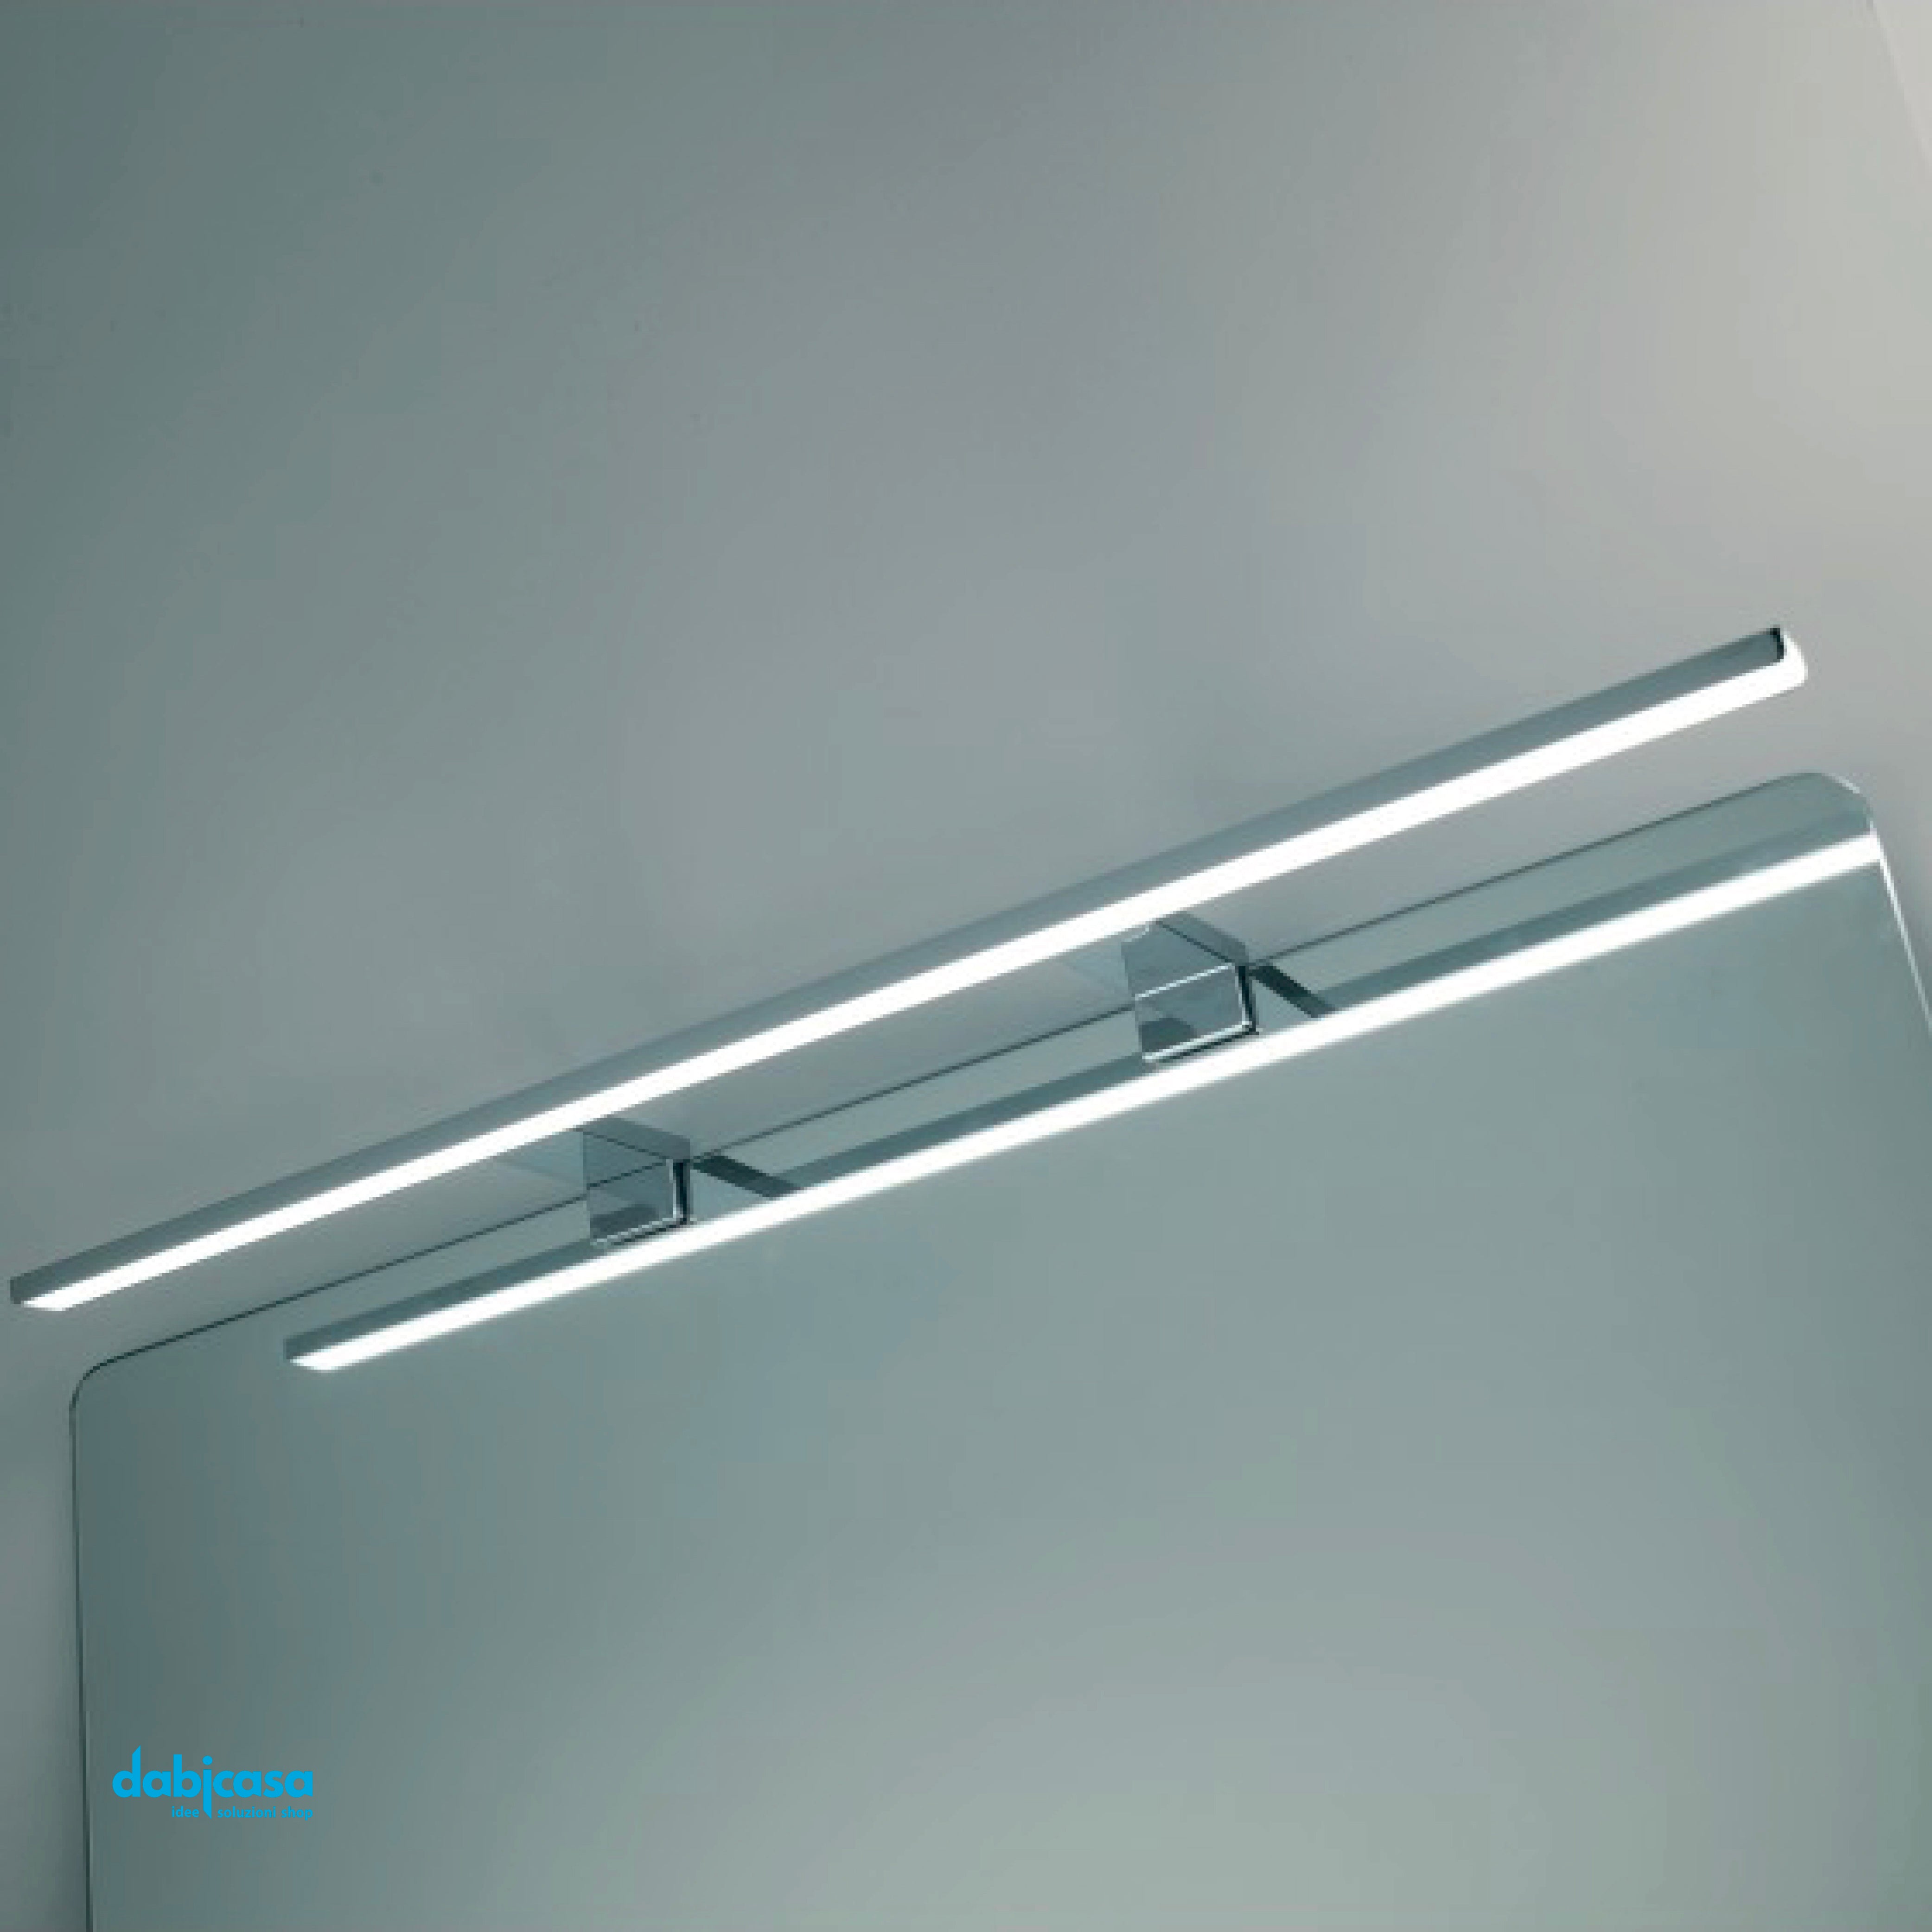 Lampada A Led Universale Da 74 cm In Alluminio Cromo , Per Specchio A Filo , Bisellato E Su Pannello.